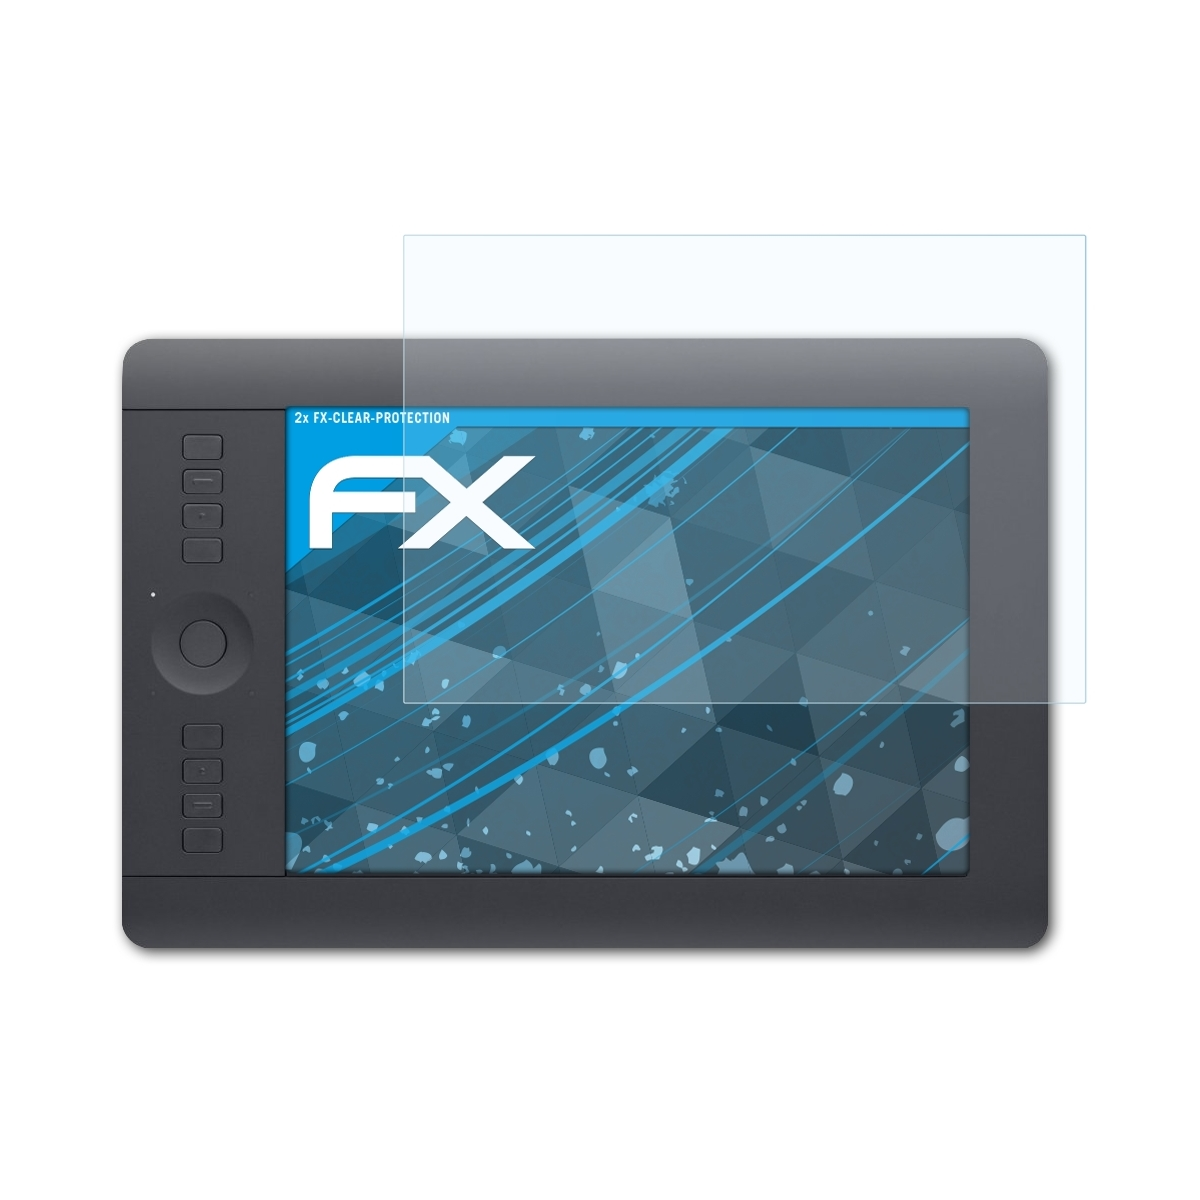 ATFOLIX 2x FX-Clear pro INTUOS Wacom Displayschutz(für (medium))